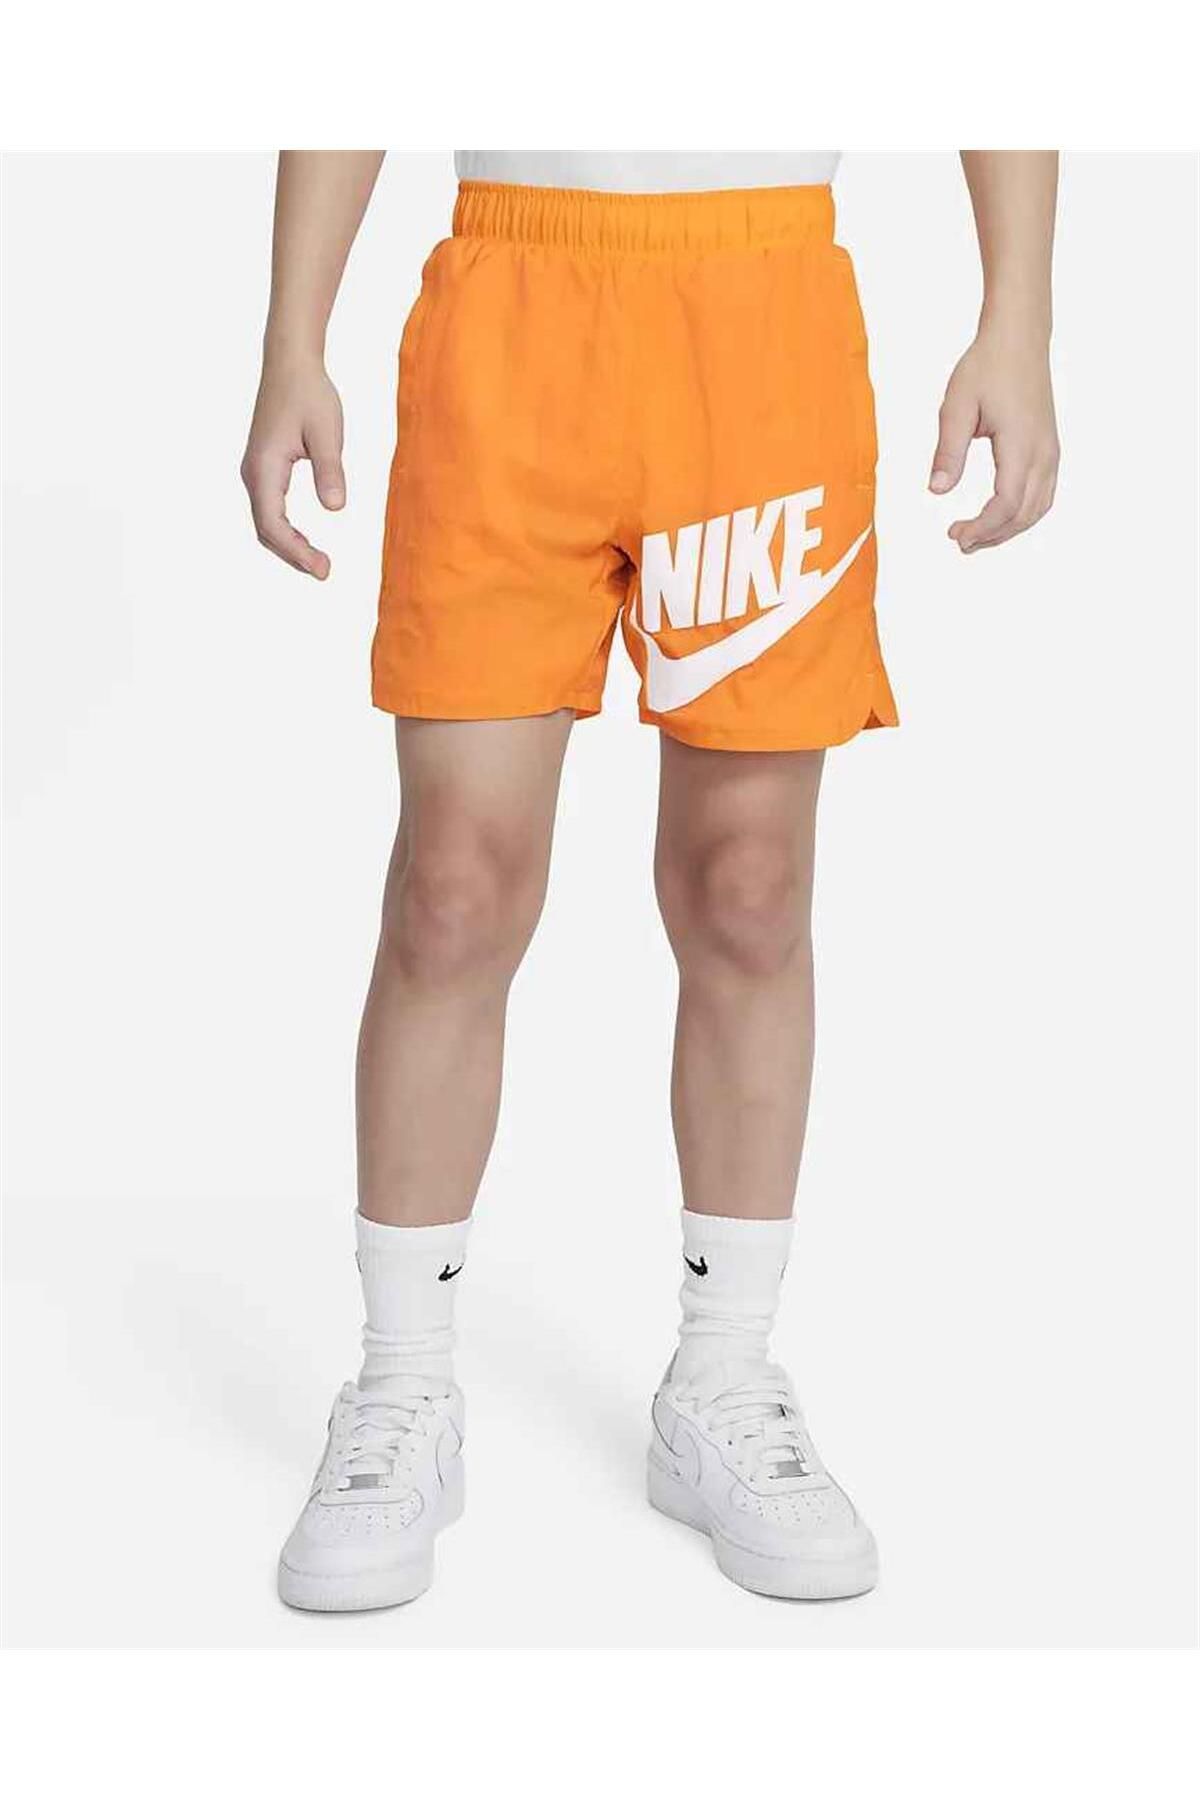 Nike Sportswear cocuk deniz havuz sortu ASLAN SPORT